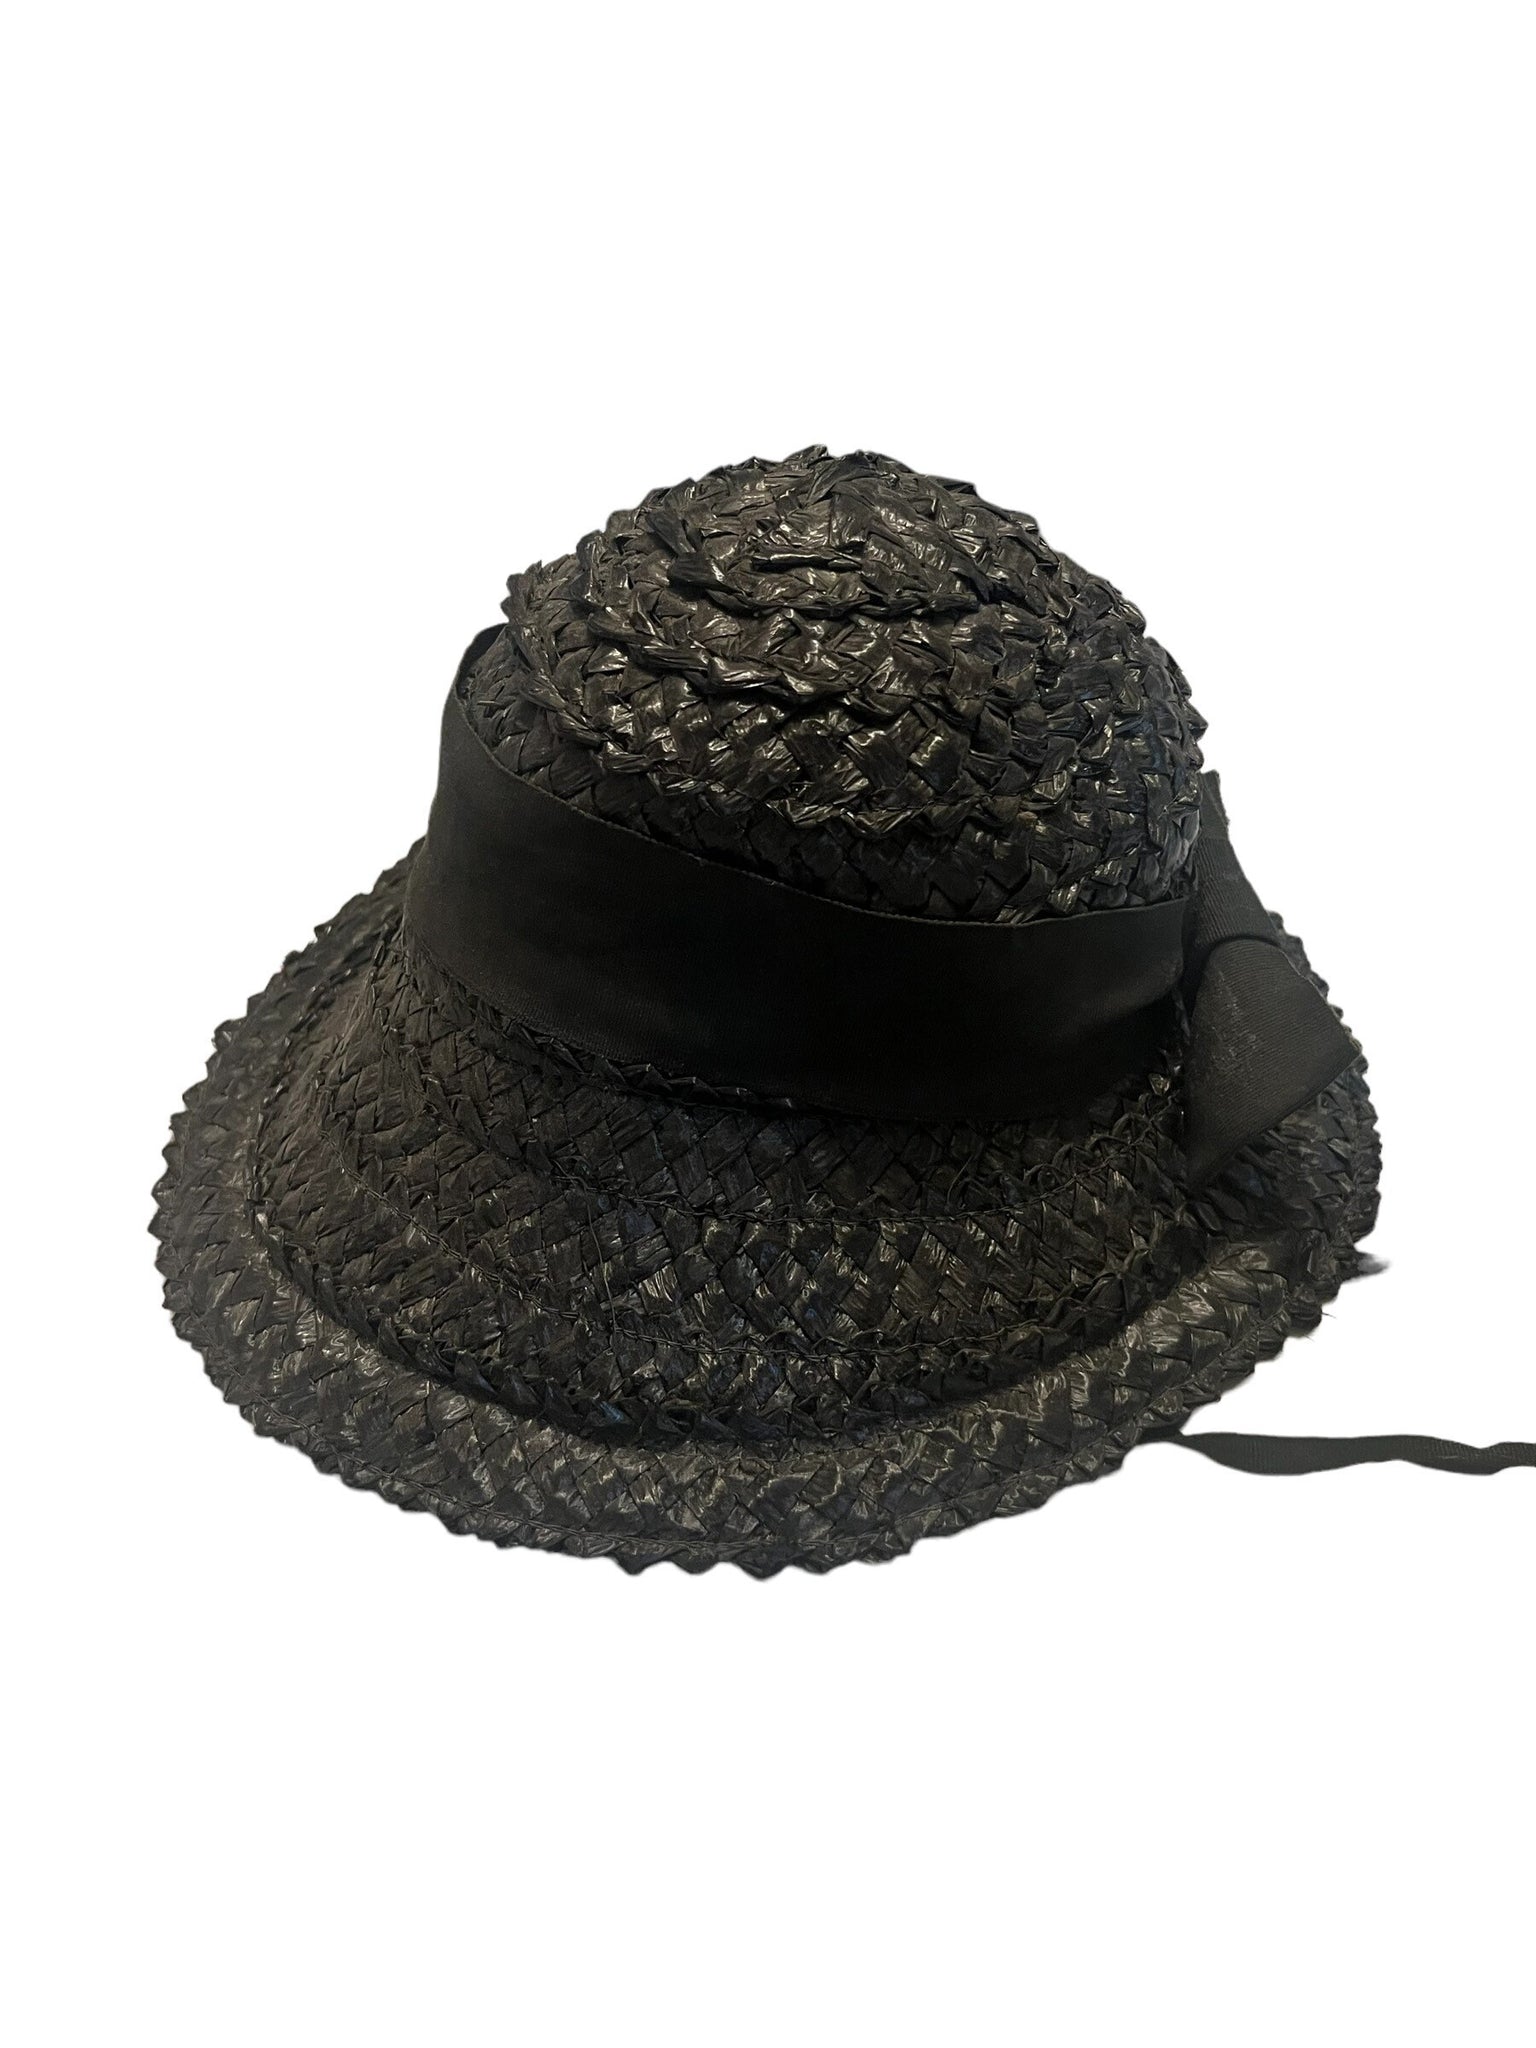 Vintage black 60's straw sun hat